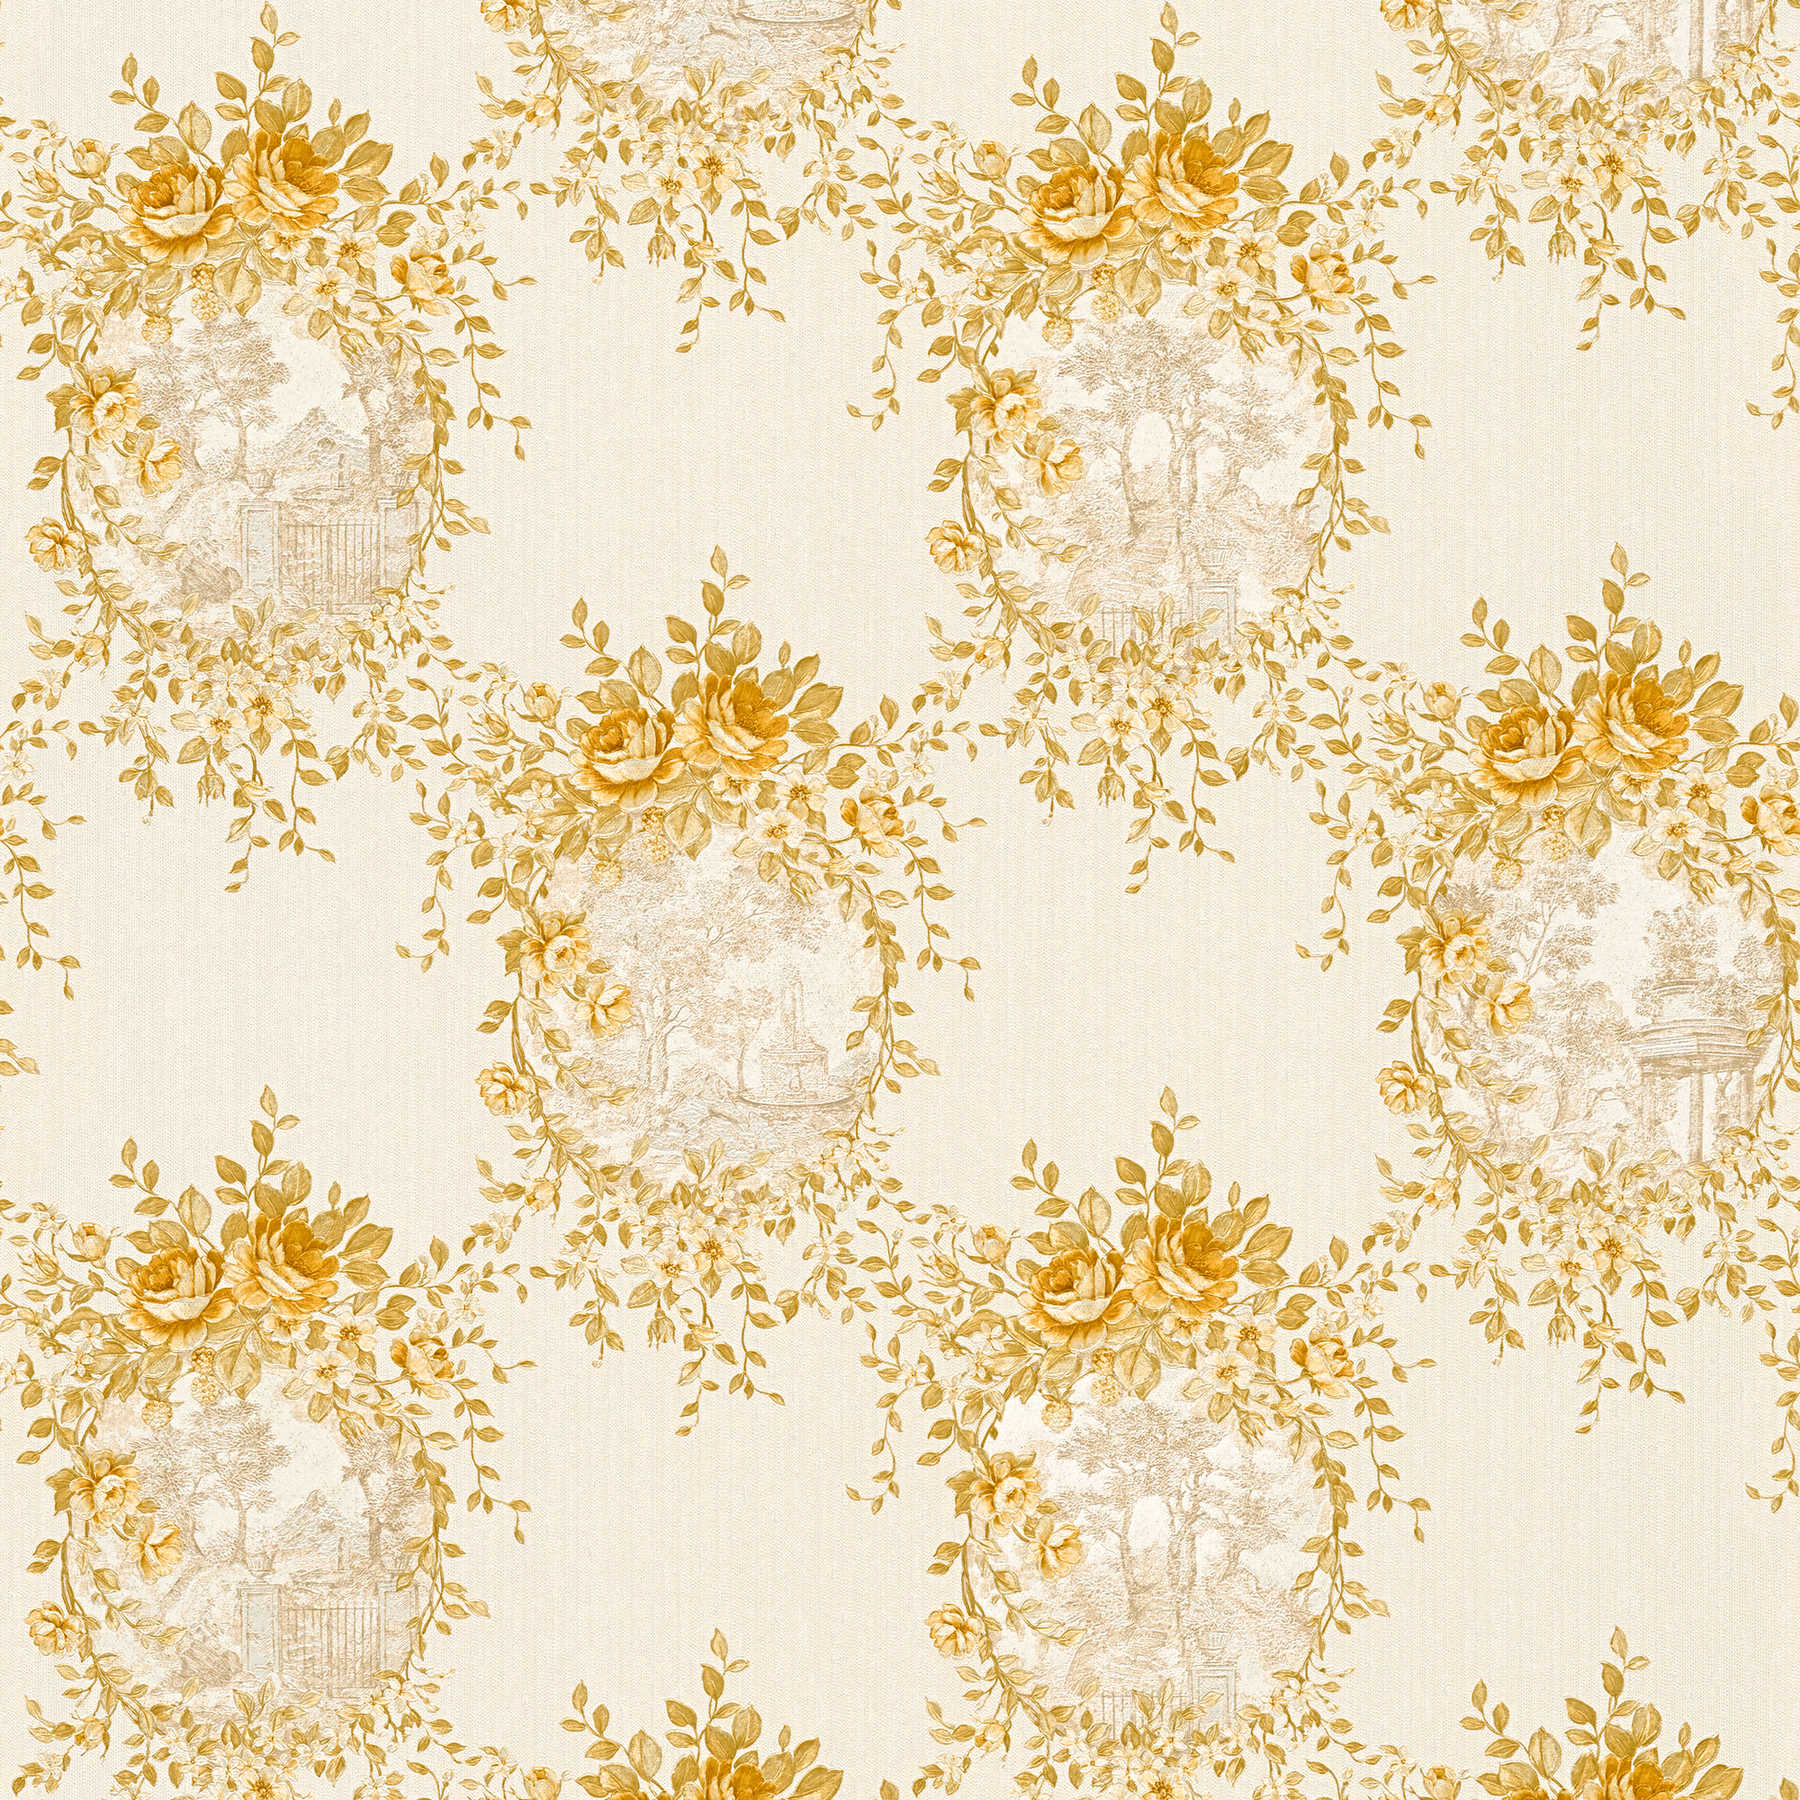 Ornament wallpaper landscape & roses emblem - beige, gold
